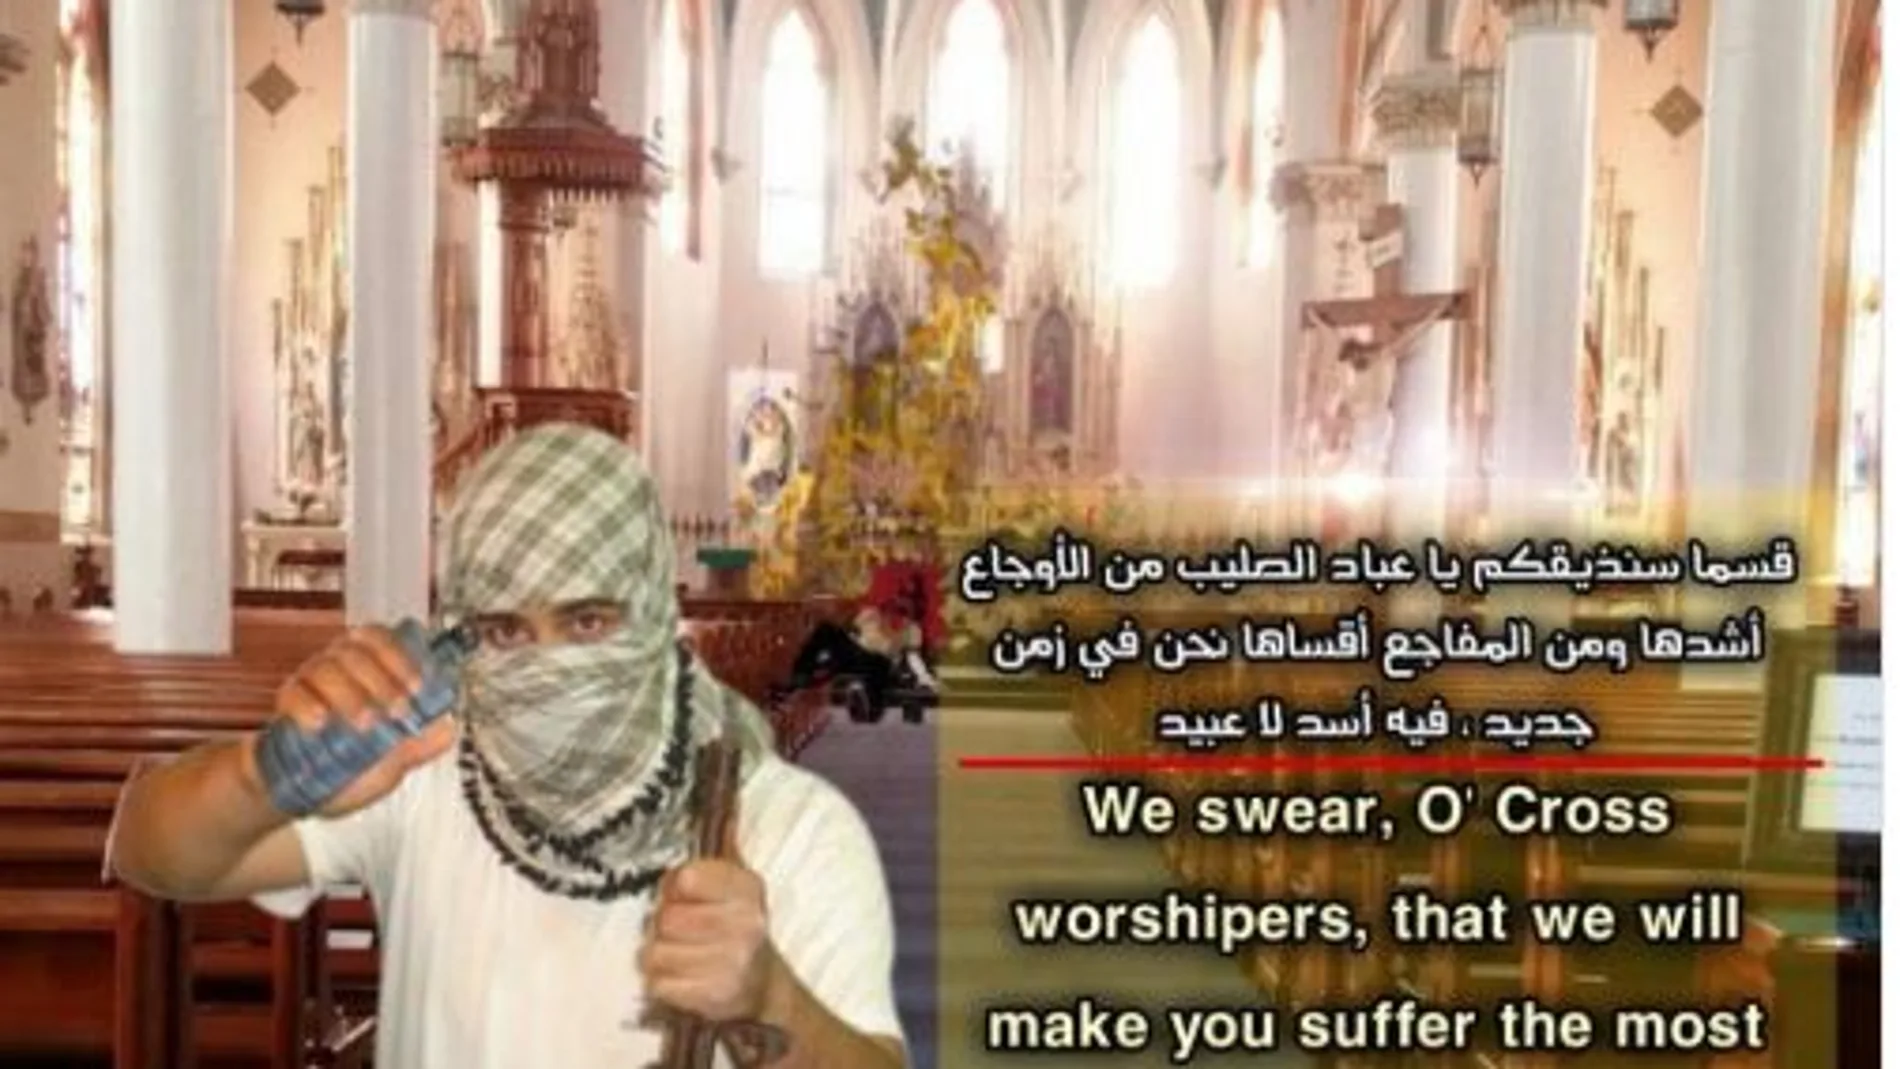 Daesh publicó en las redes sociales un cartel con amenazas a los cristianos norteamericanos.